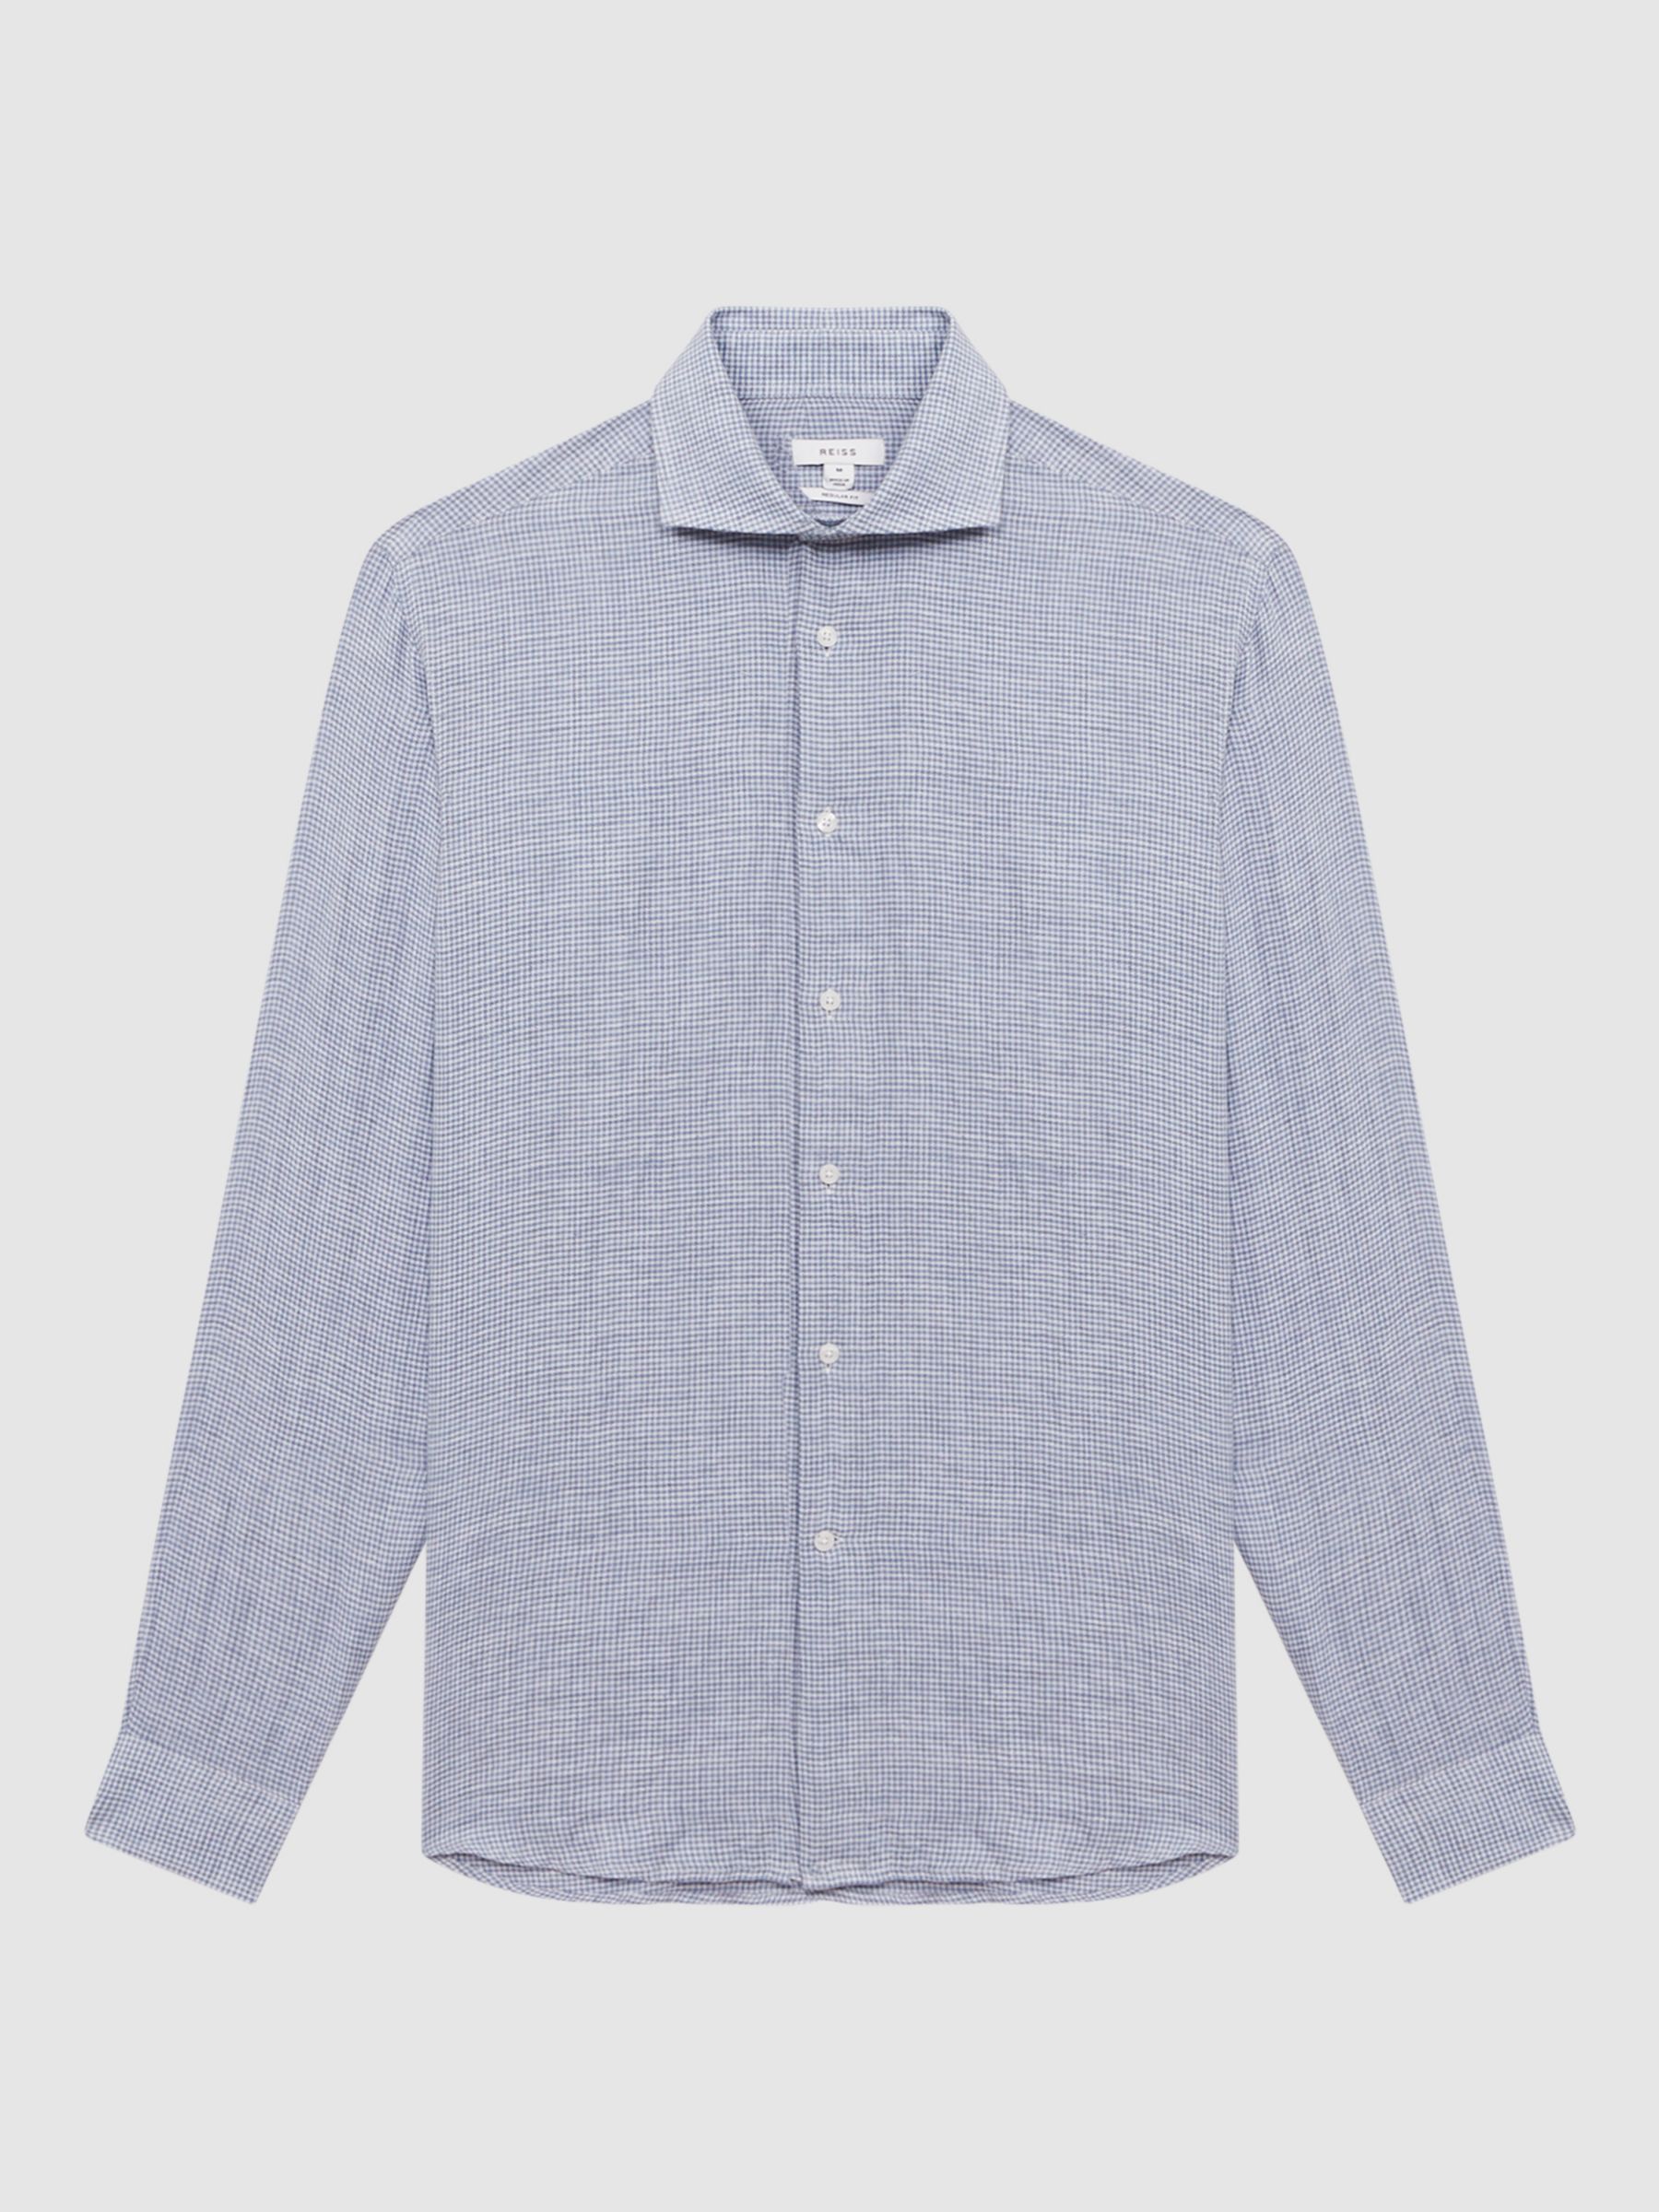 Reiss Ruban Gingham Check Linen Shirt, Blue at John Lewis & Partners